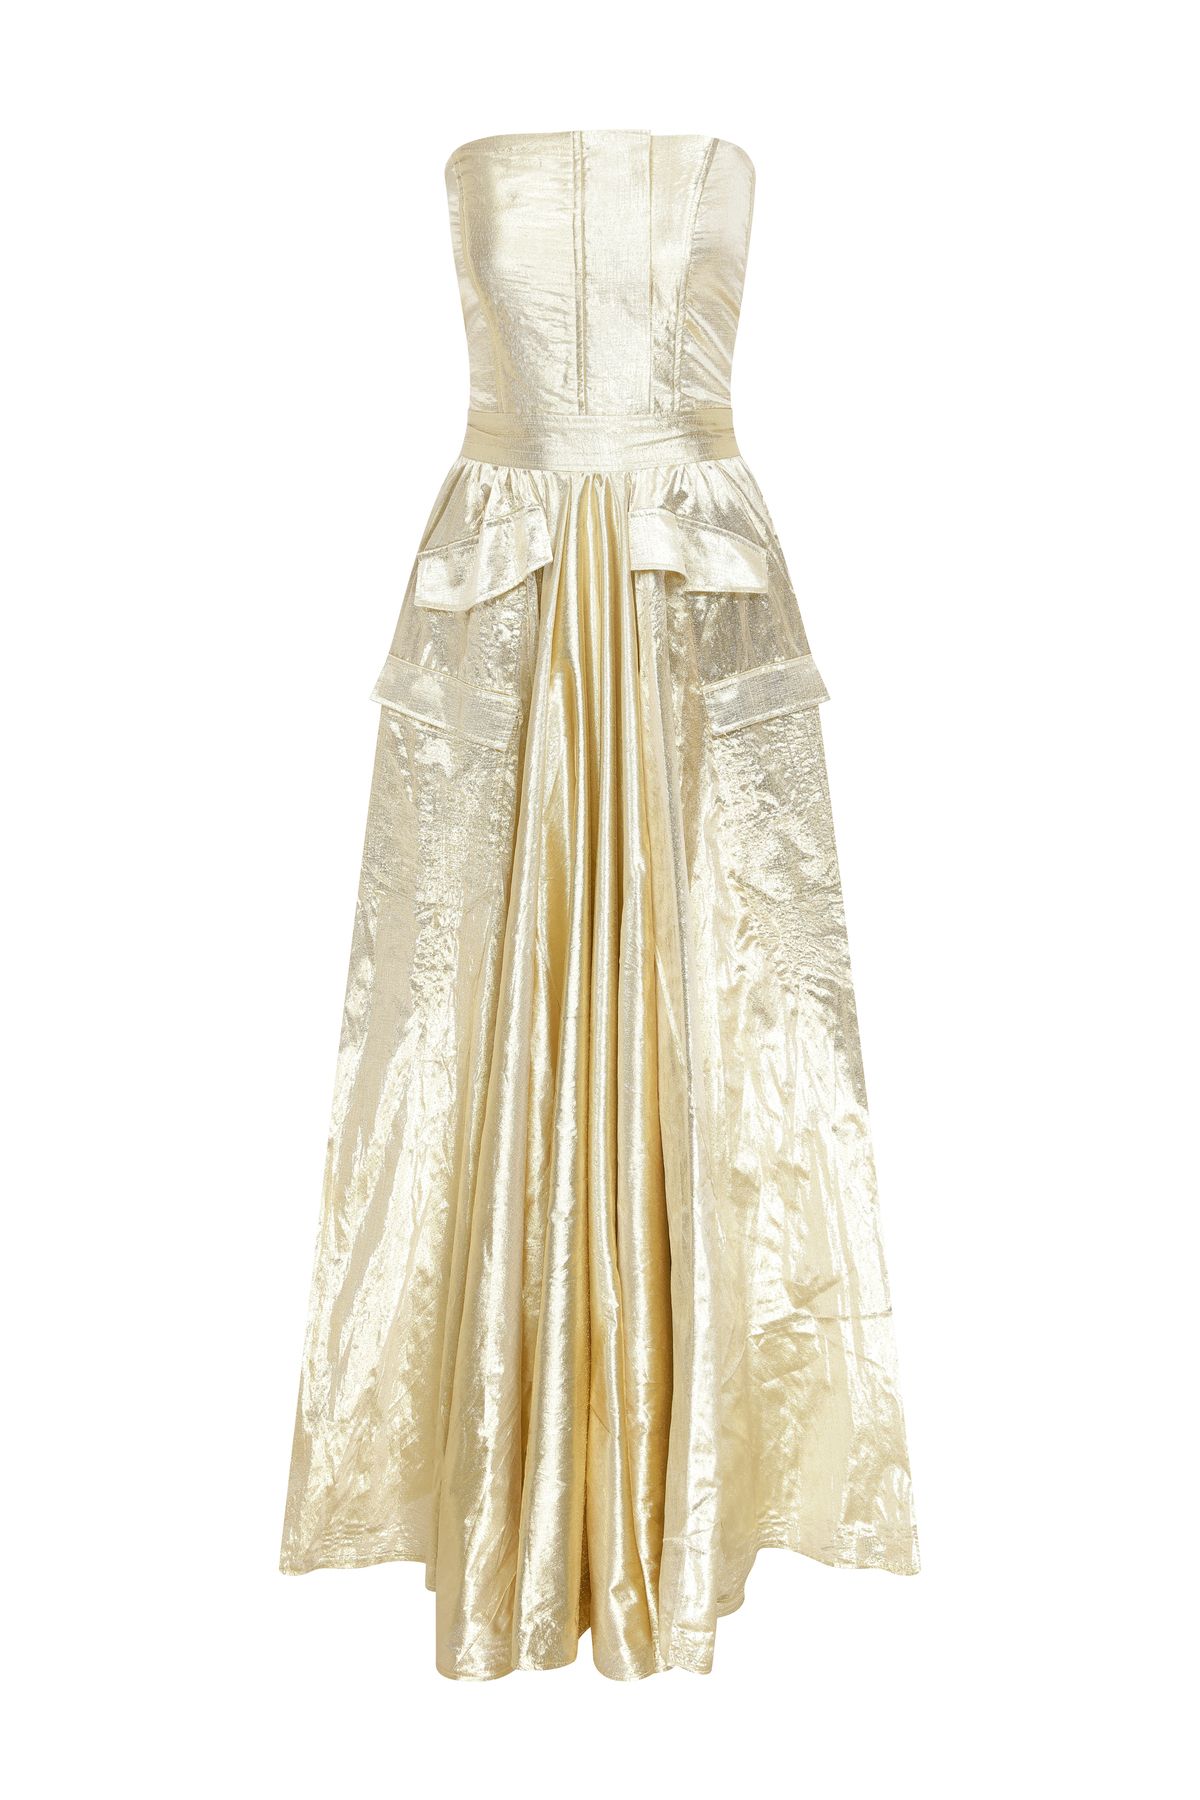 Mert Erkan Cep Detaylı Gold Parlak Straplez Maxi Elbise